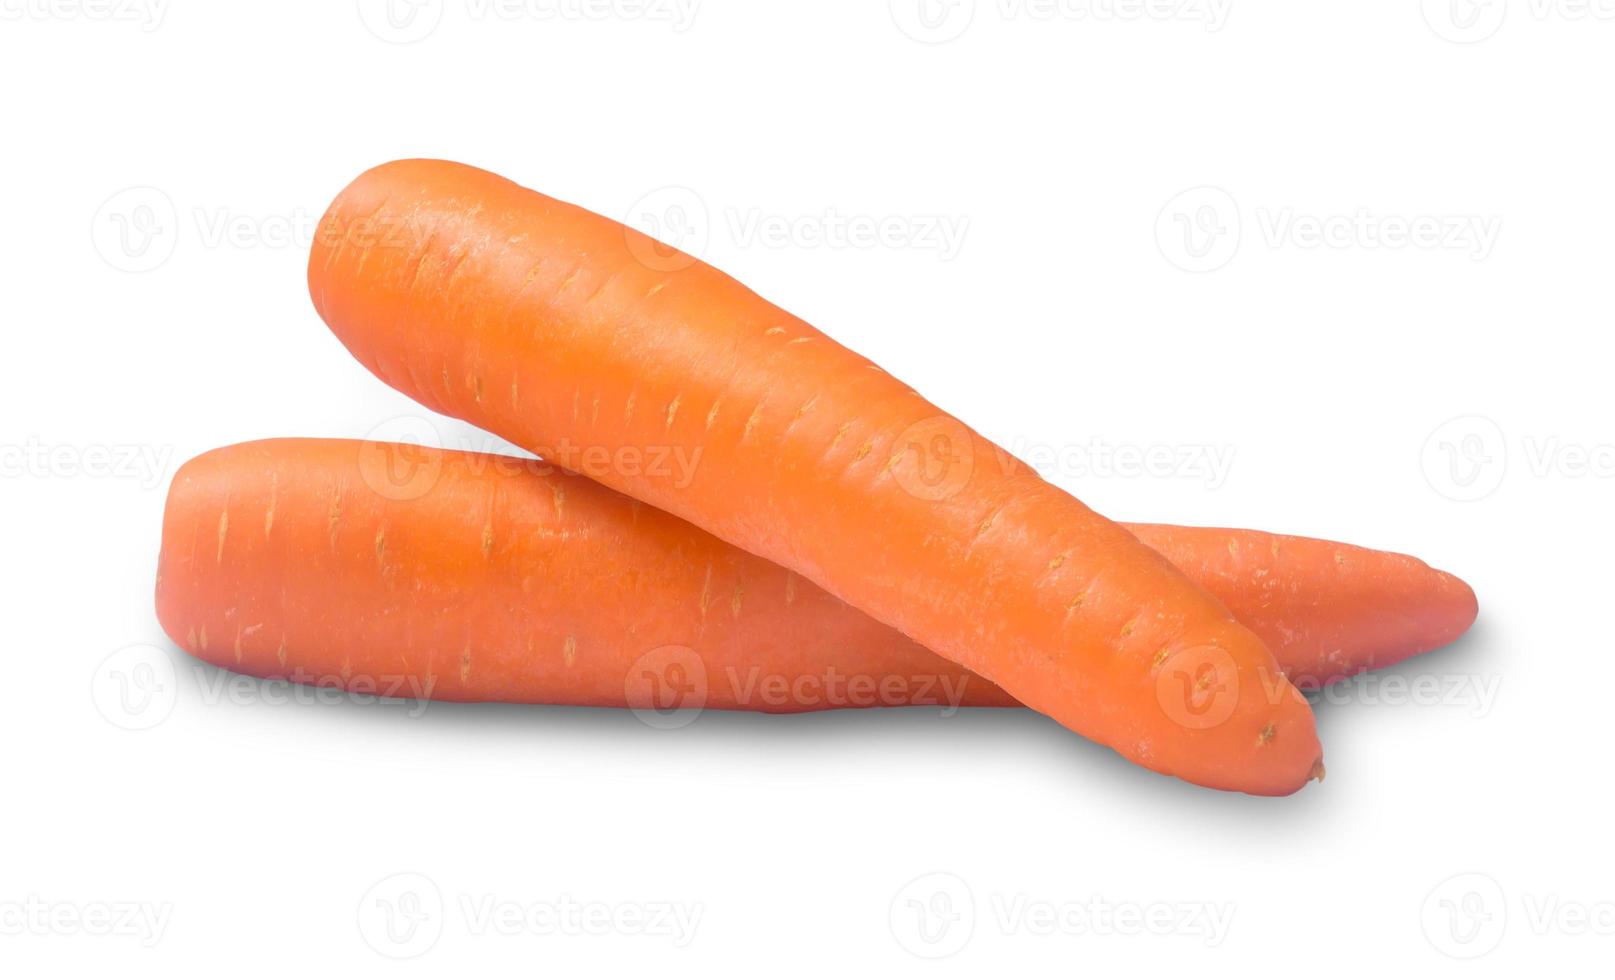 dos verduras frescas de zanahoria naranja aisladas en fondo blanco con camino de recorte foto